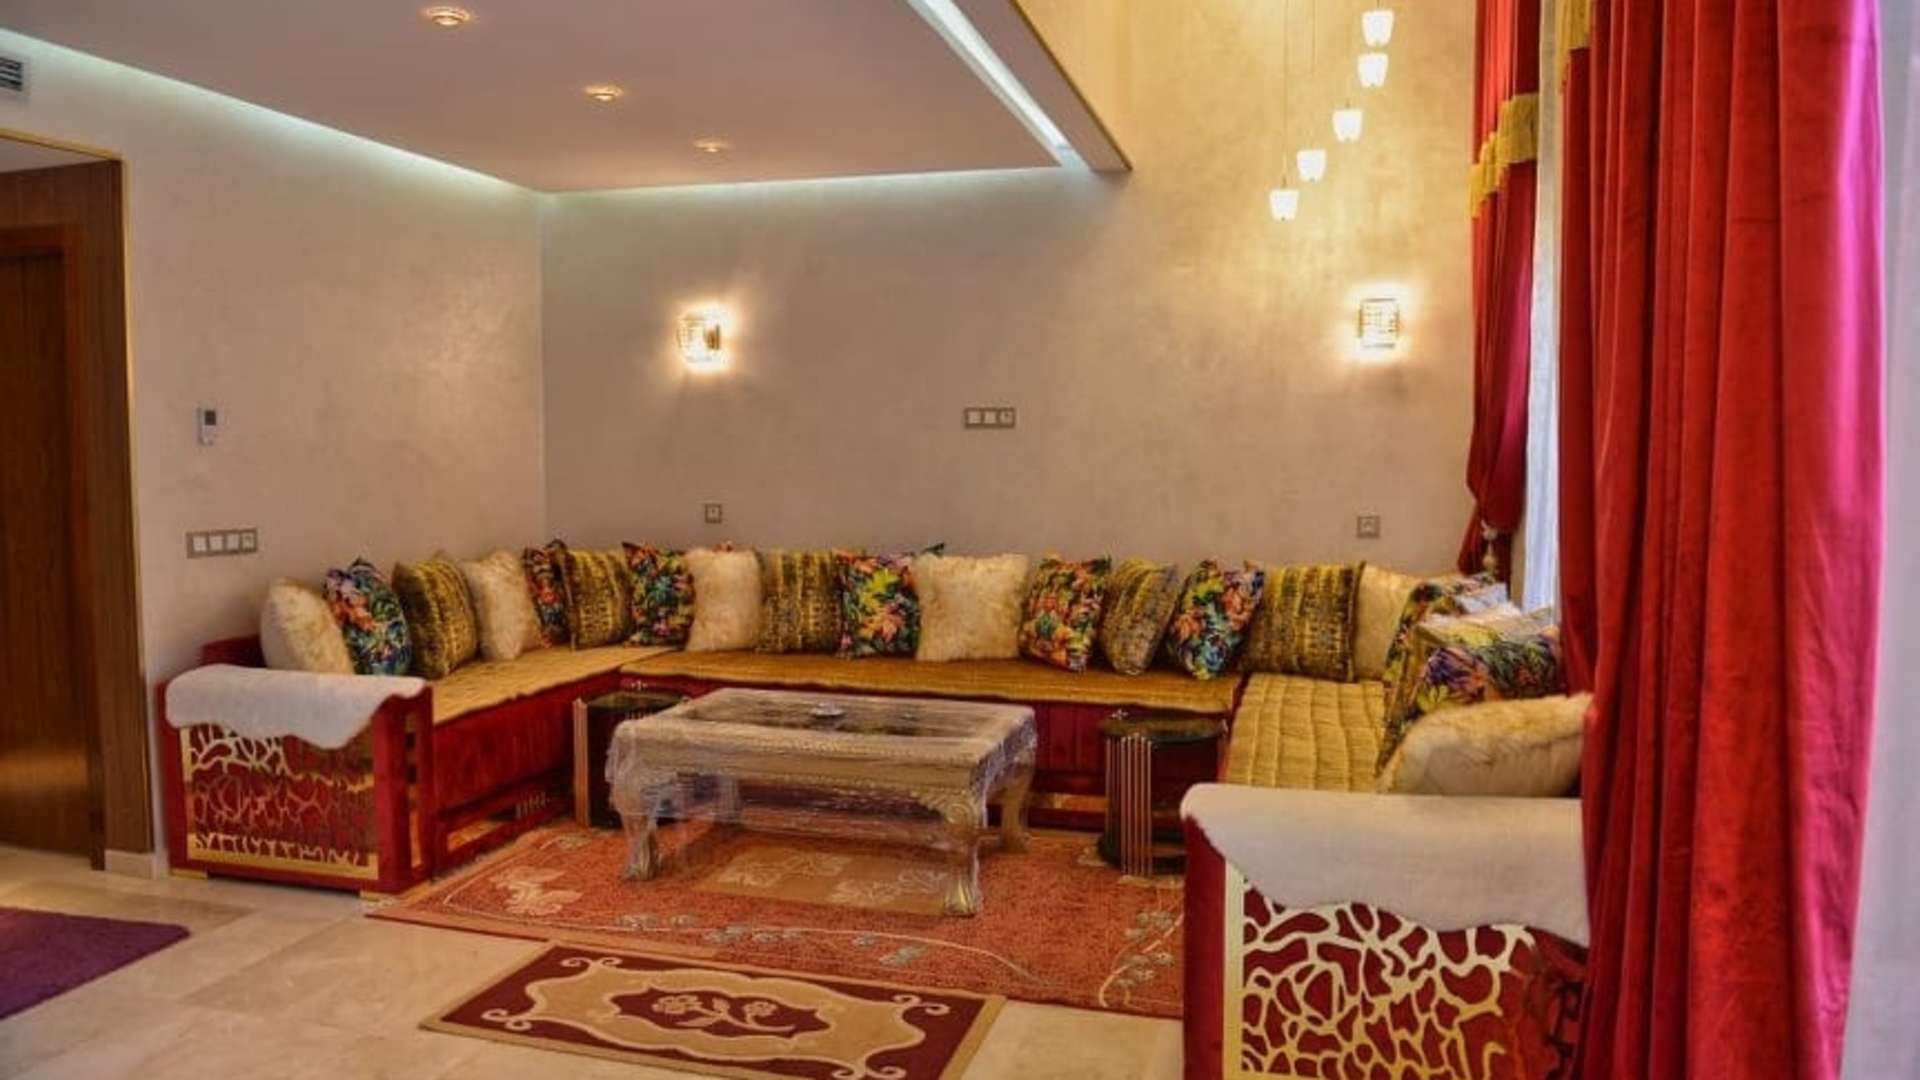 Vente,Duplex,Magnifique duplex de 2ch salon dans une belle résidence avec piscine à Marrakech,Marrakech,Route Casablanca